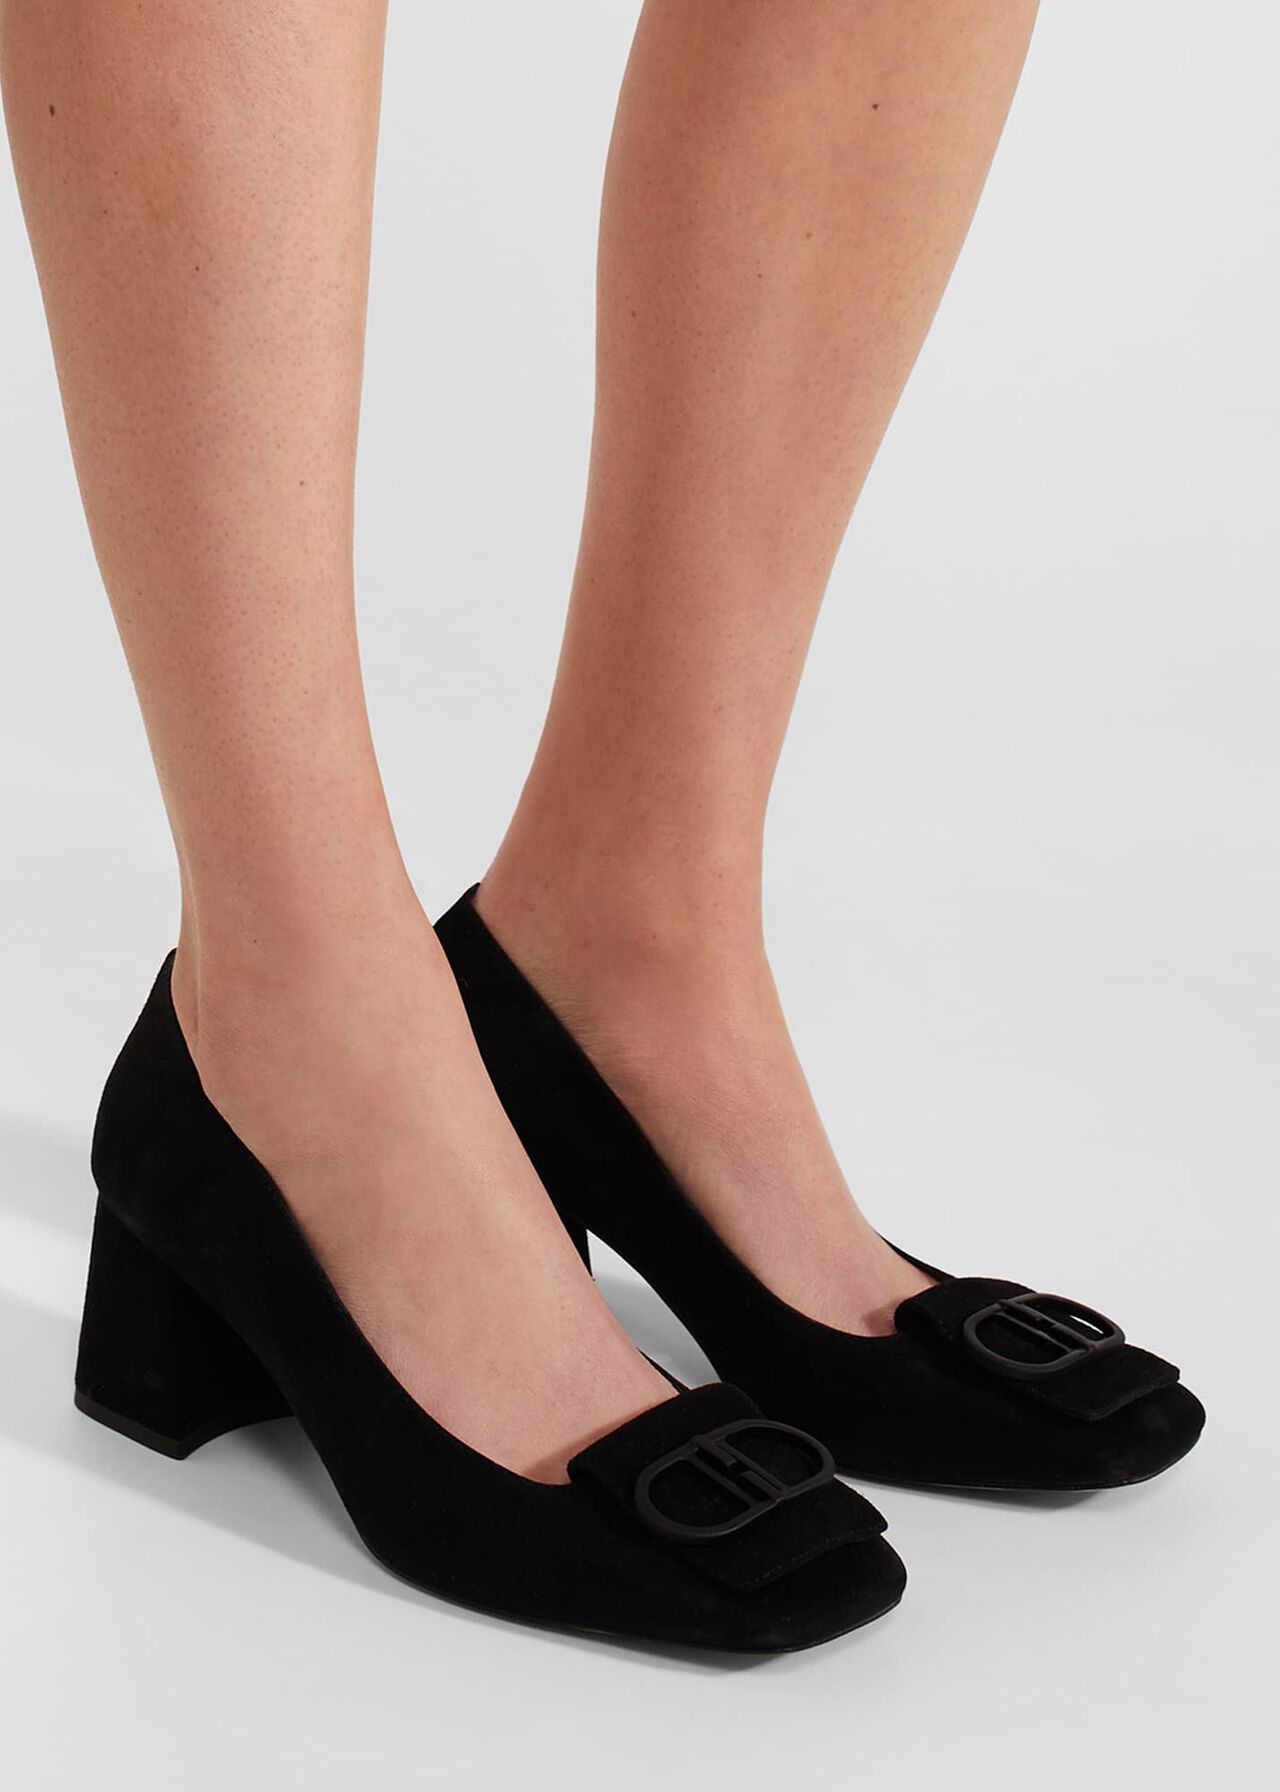 Lexia Court Shoes, Black, hi-res